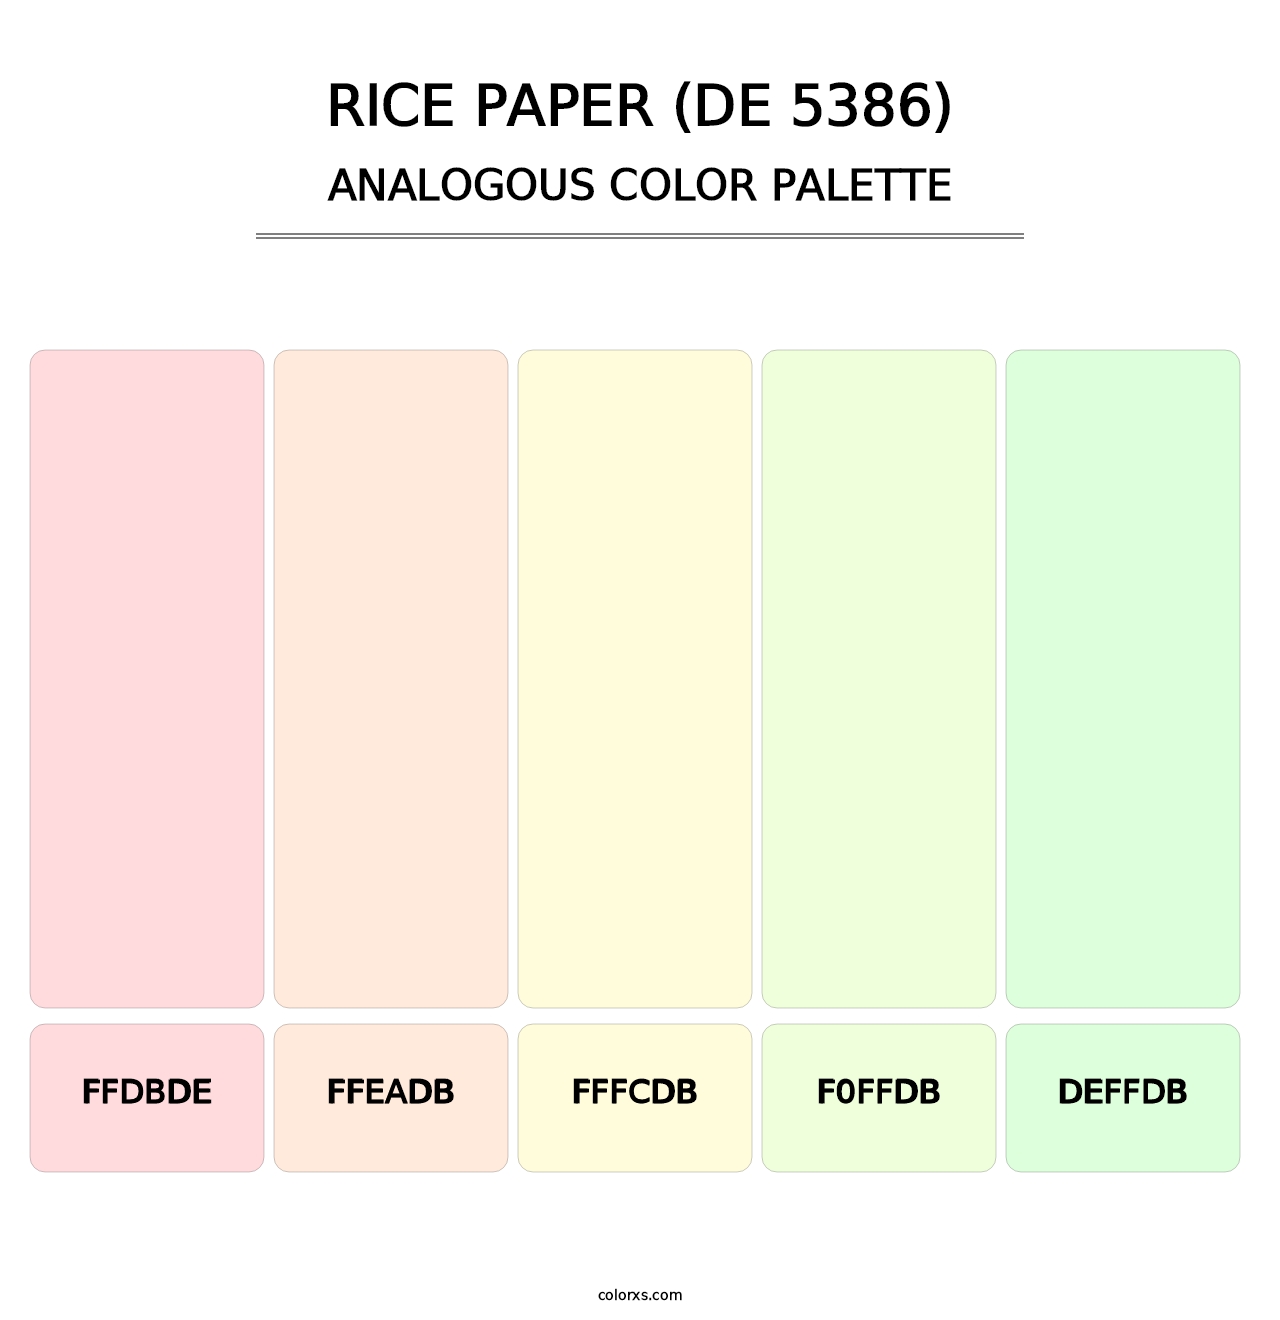 Rice Paper (DE 5386) - Analogous Color Palette